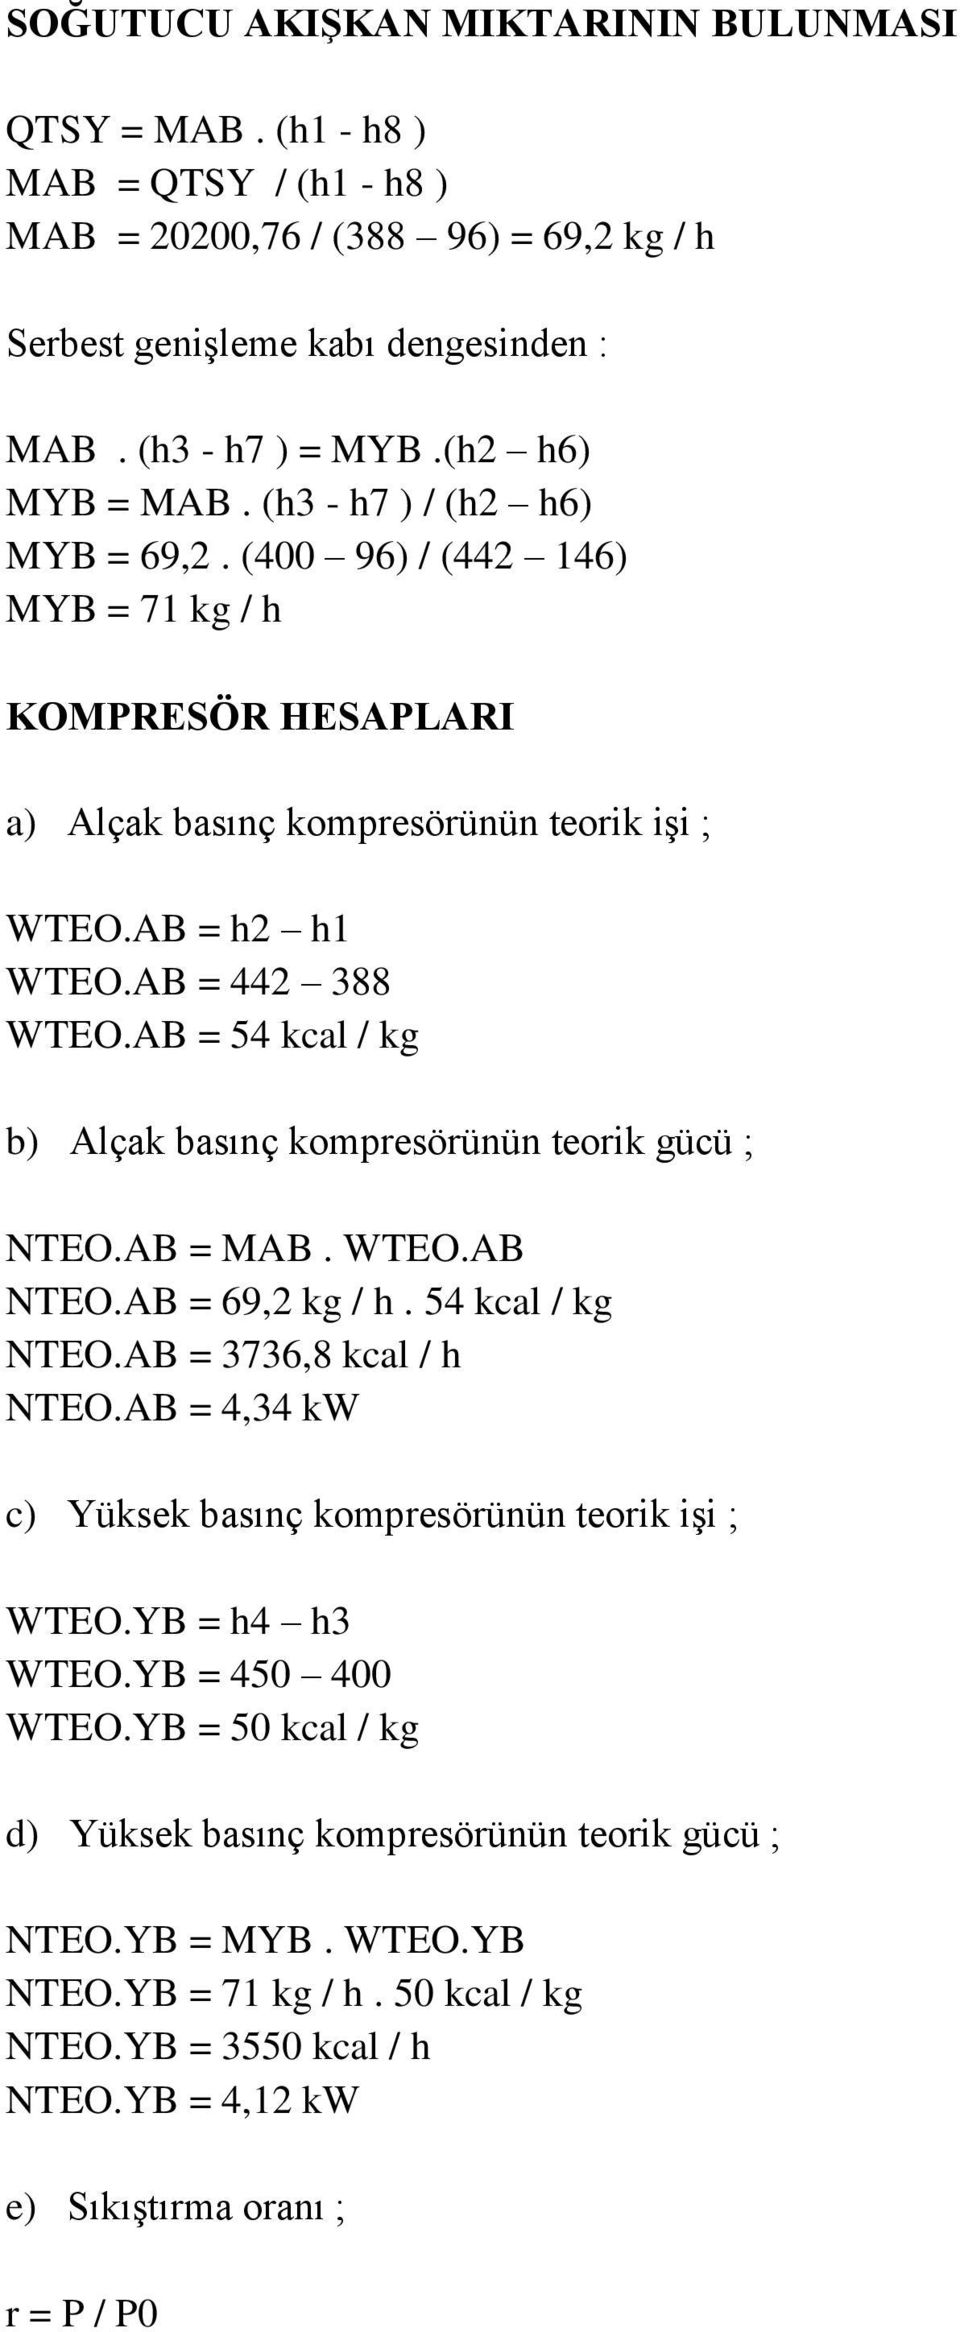 AB = 54 kcal / kg b) Alçak basınç kompresörünün teorik gücü ; NTEO.AB = MAB. WTEO.AB NTEO.AB = 69,2 kg / h. 54 kcal / kg NTEO.AB = 3736,8 kcal / h NTEO.